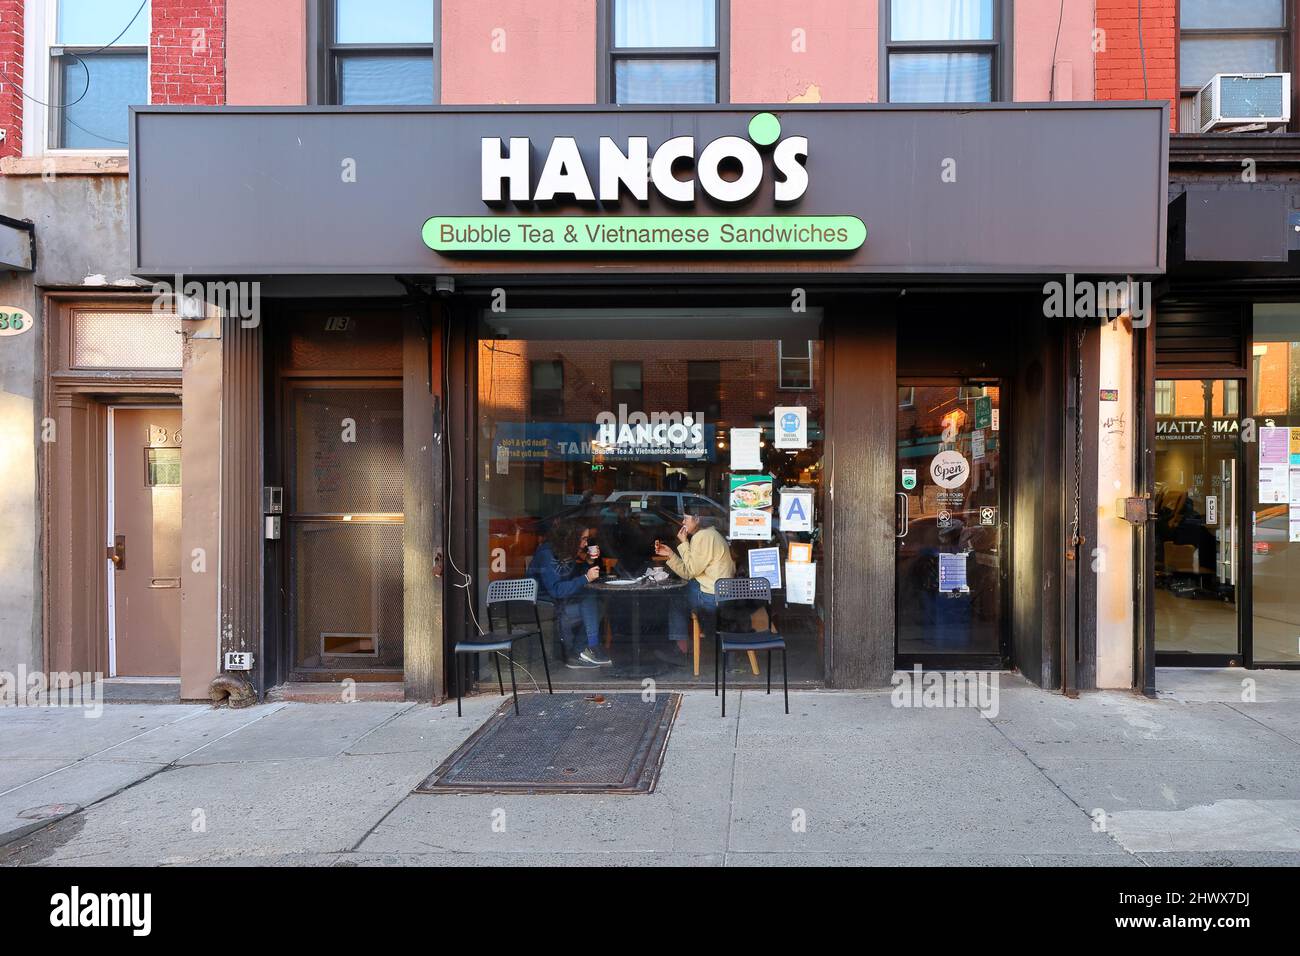 Hanco's, 134 Smith Street, Brooklyn, NYC Foto von einem vietnamesischen Sandwich-Laden im Cobble Hill-Viertel. Stockfoto